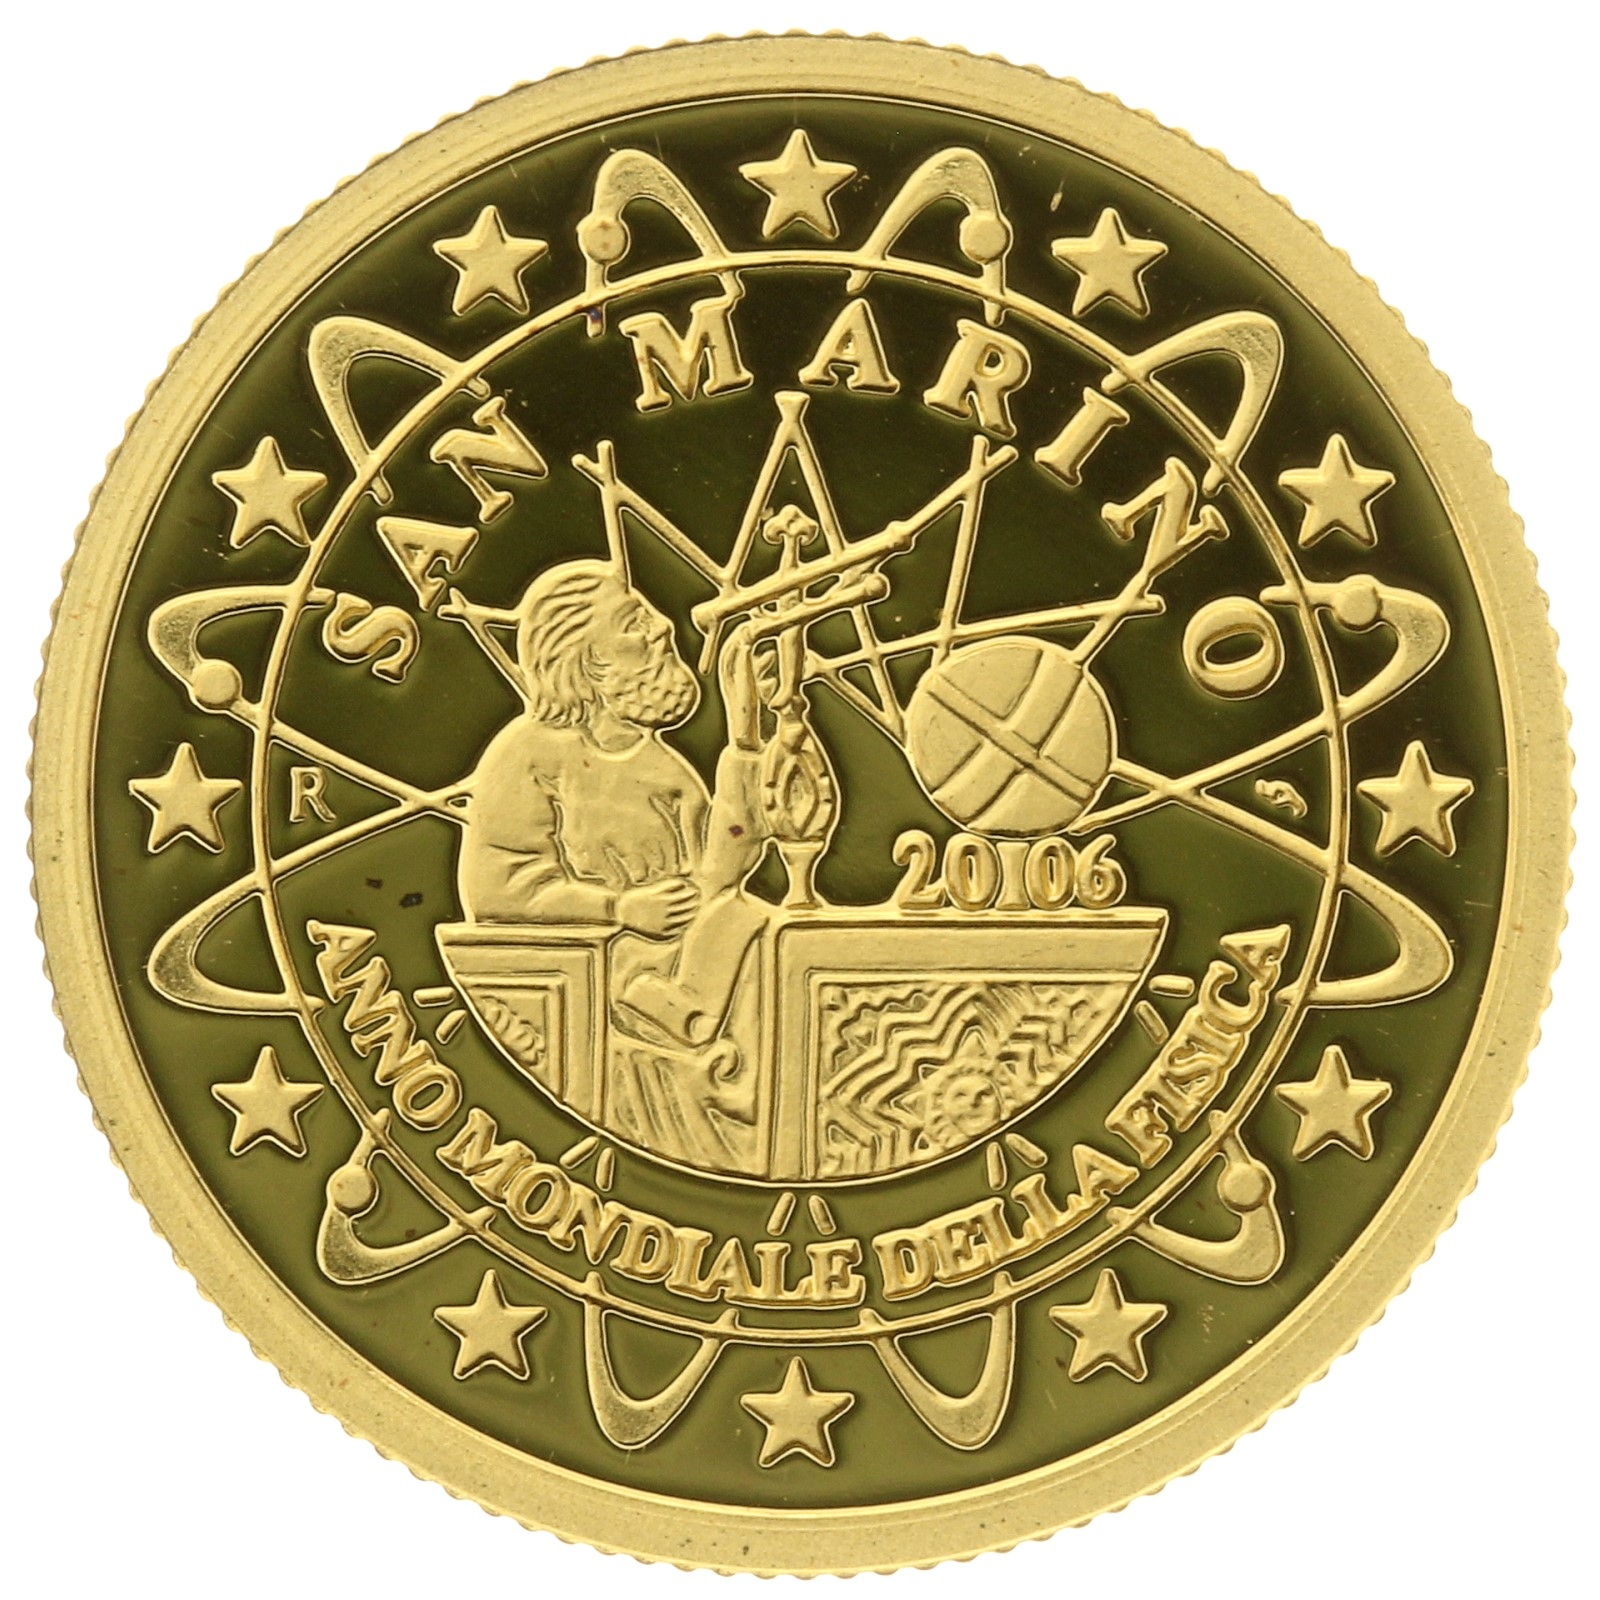 Liberia - 25 dollar - 2006 - San Marino - 1/25oz 